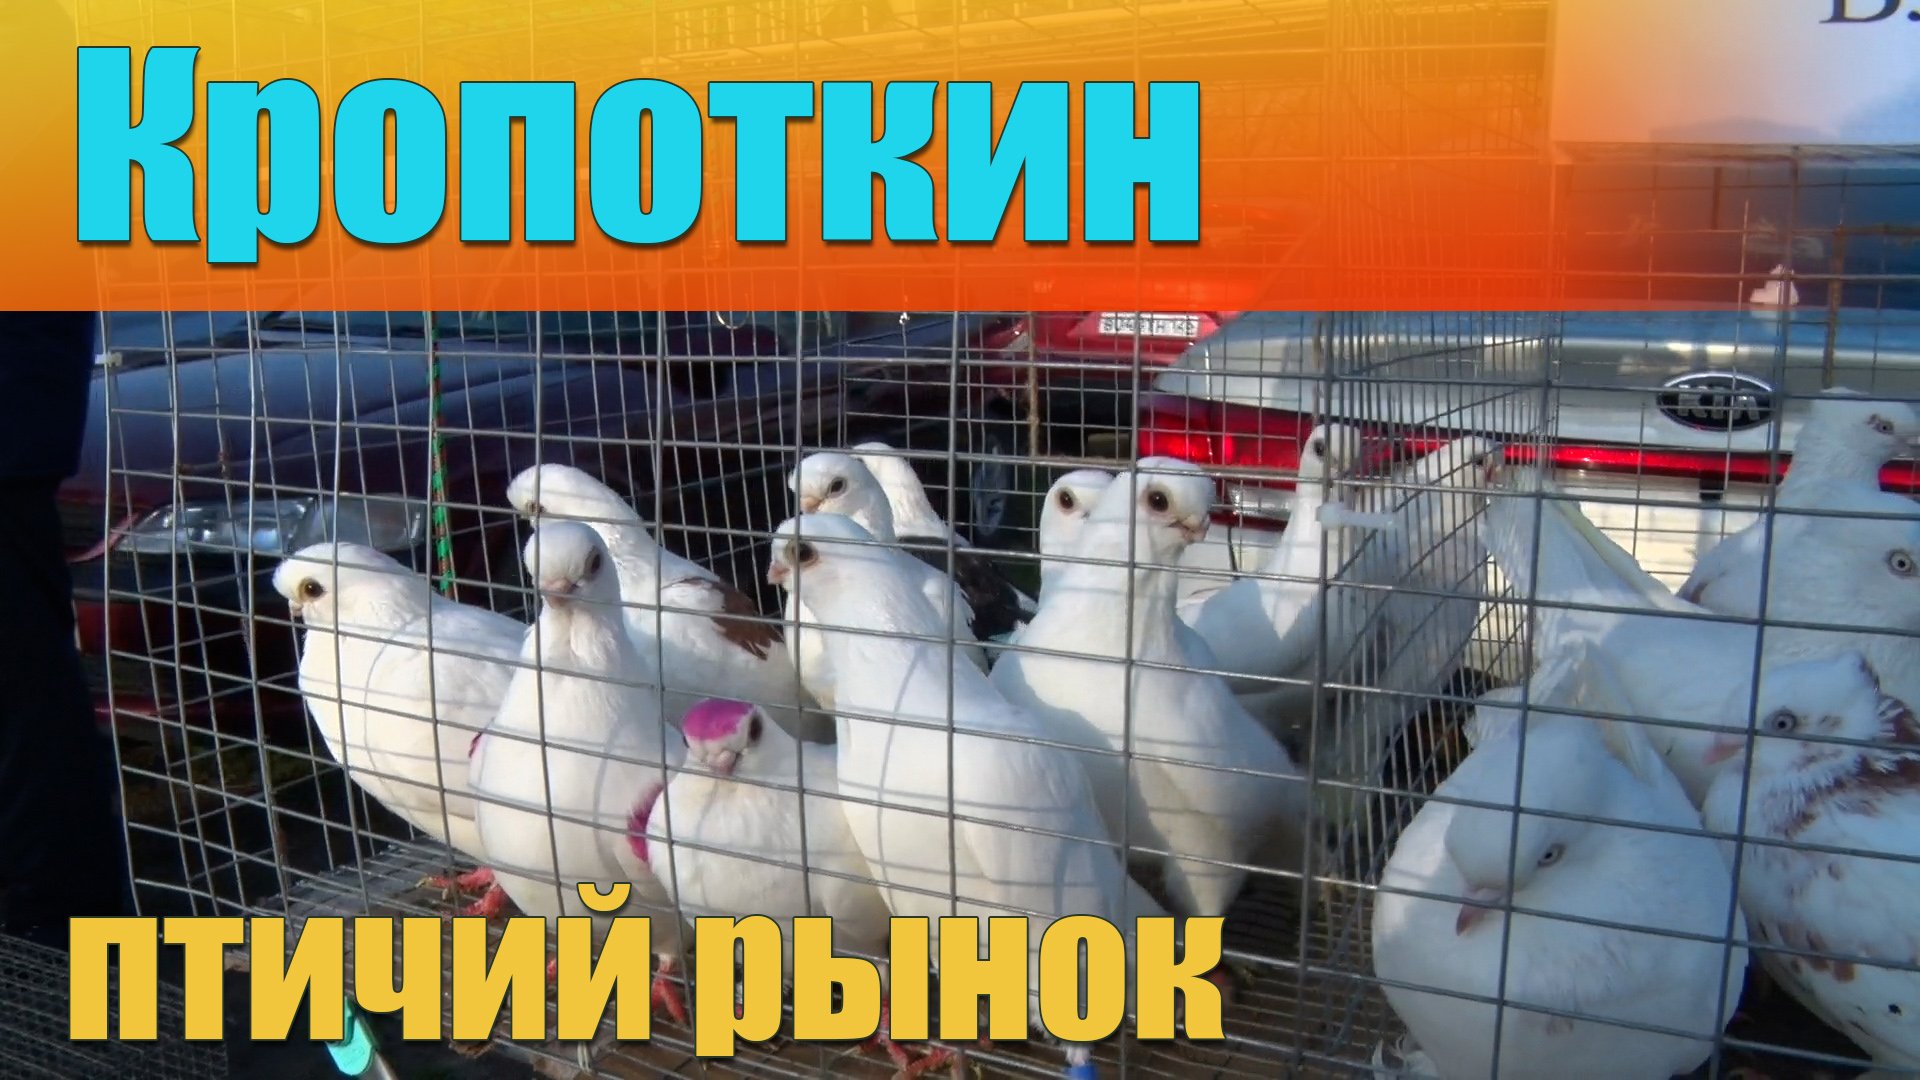 Голуби в кропоткине. Голуби на птичьем рынке. Птиц ий рынок в крапоткине. Москва птичий рынок голуби. Ярмарка голубей в Кропоткине.